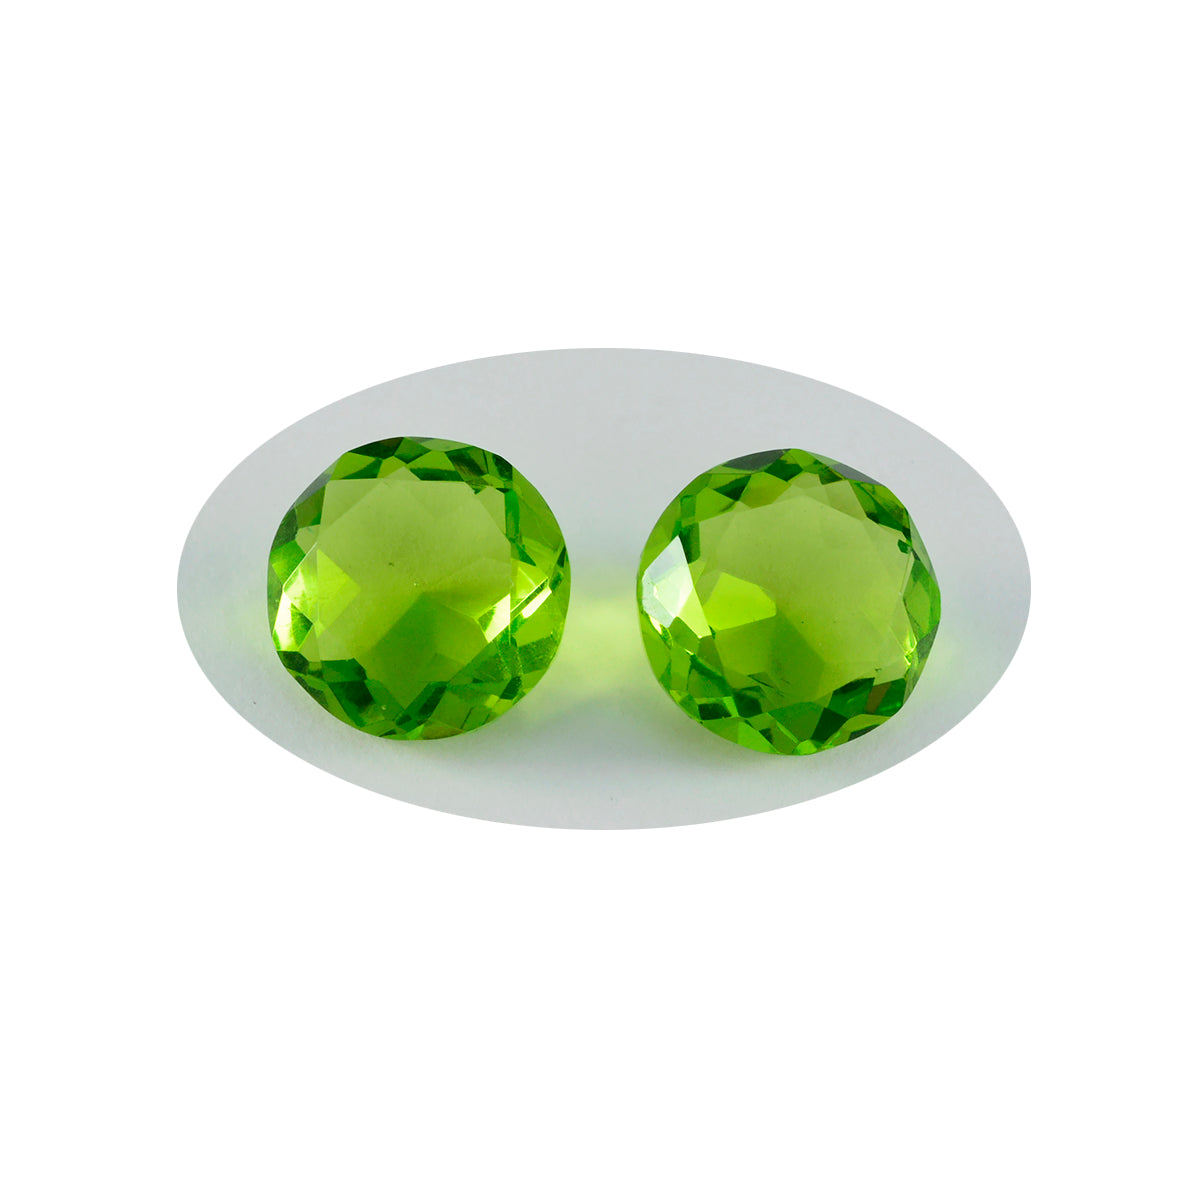 riyogems 1шт зеленый перидот cz граненый 11x11 мм круглая форма хорошее качество свободный камень